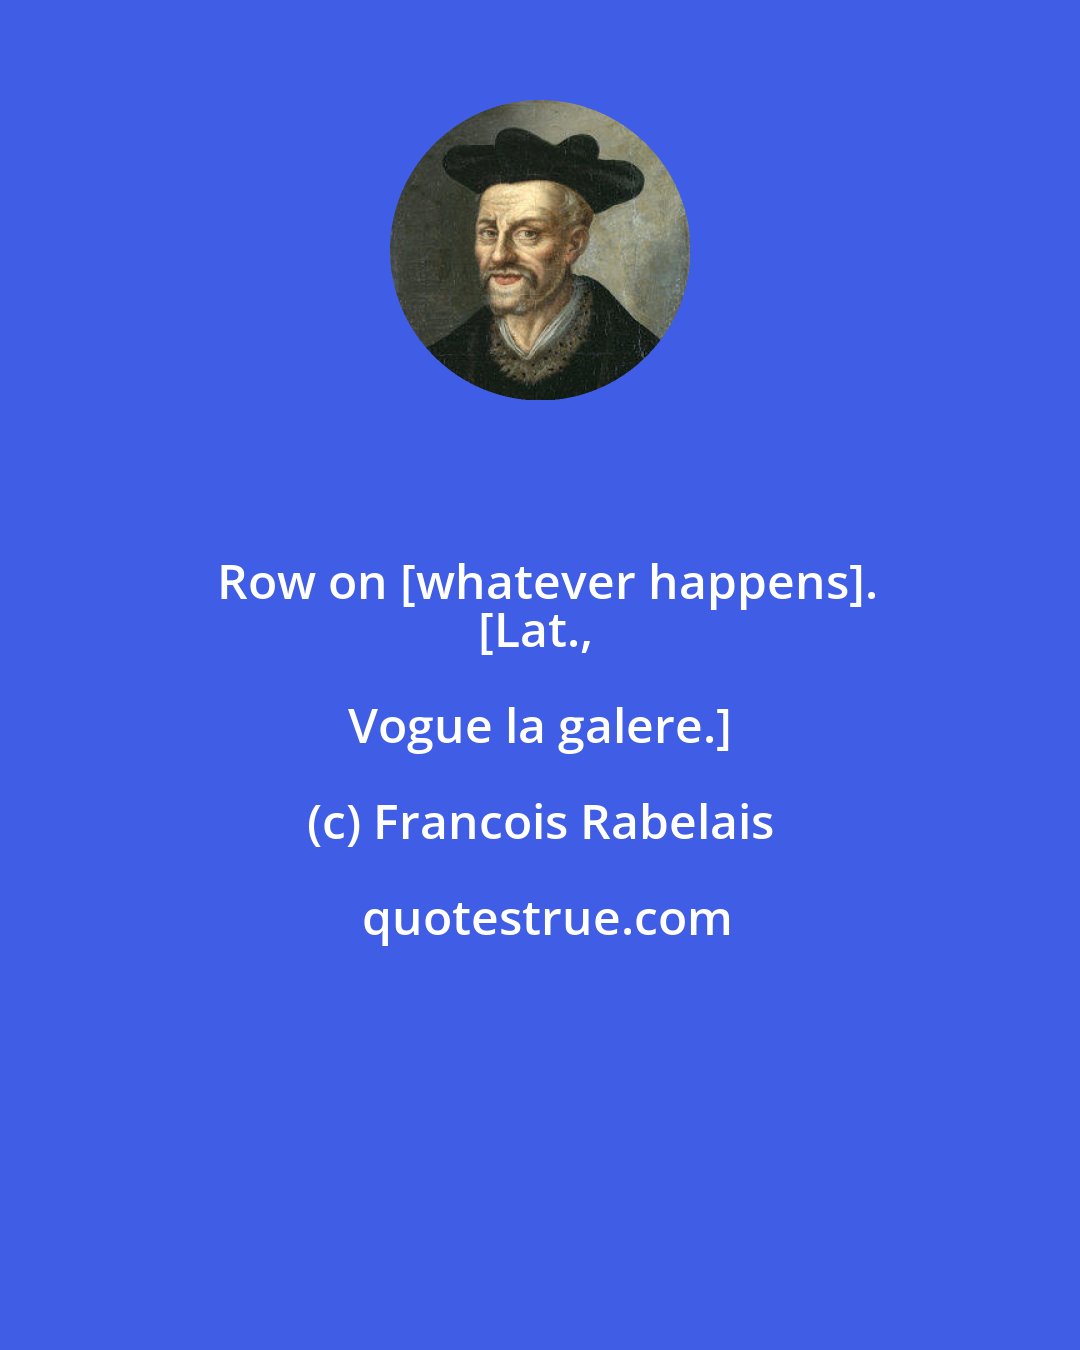 Francois Rabelais: Row on [whatever happens].
[Lat., Vogue la galere.]